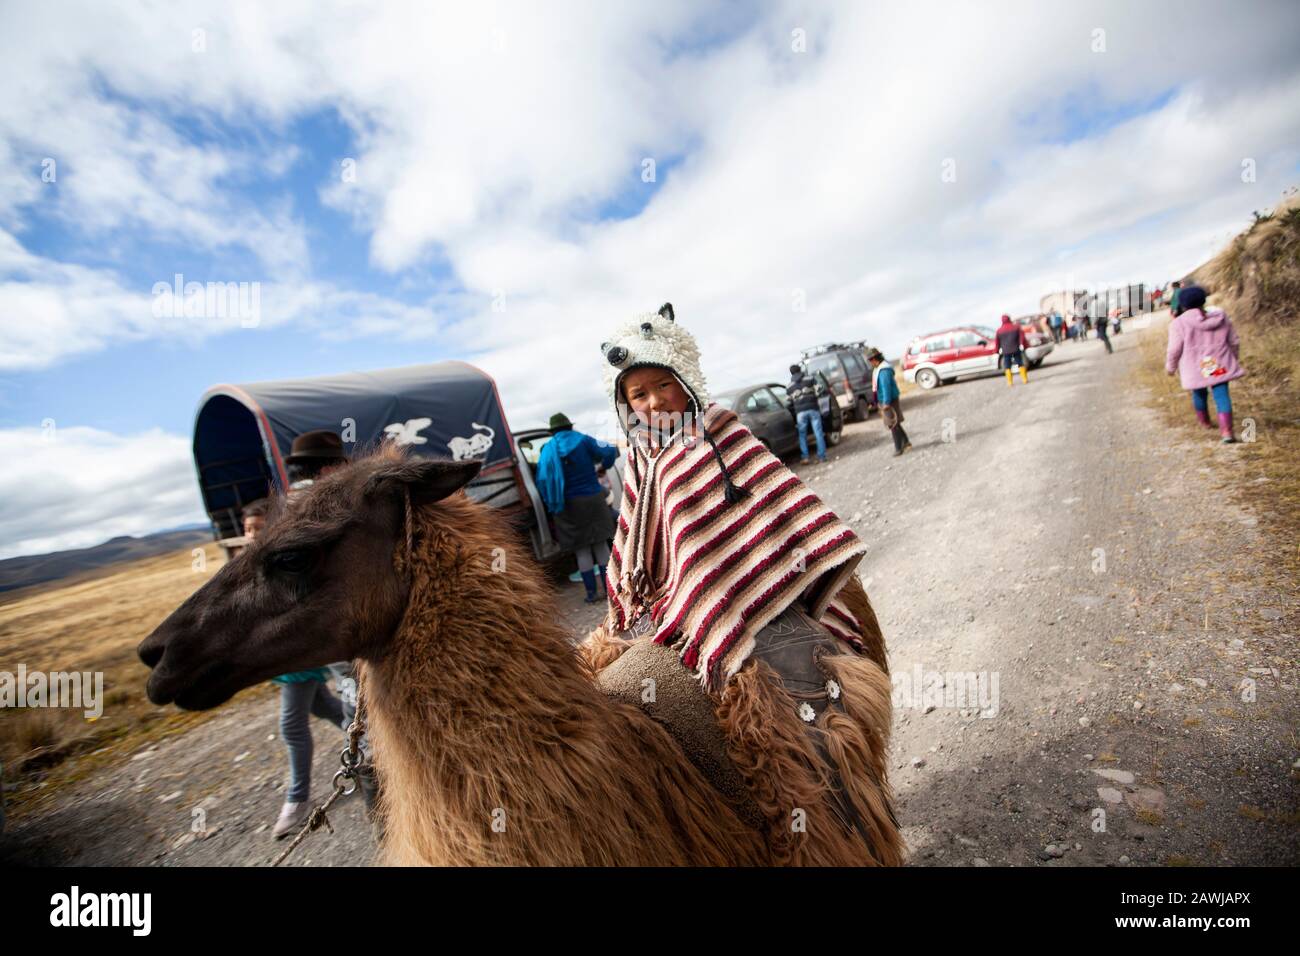 Quito, Équateur. 8 février 2020. Un garçon mandit son llama en attendant le début de la course. La course traditionnelle de Lama dans le parc national de Llanganates a lieu dans la province de Tungurahua à 4100 mètres au-dessus du niveau de la mer. Crédit: Juan Diego Monténégro//Dpa/Alay Live News Banque D'Images